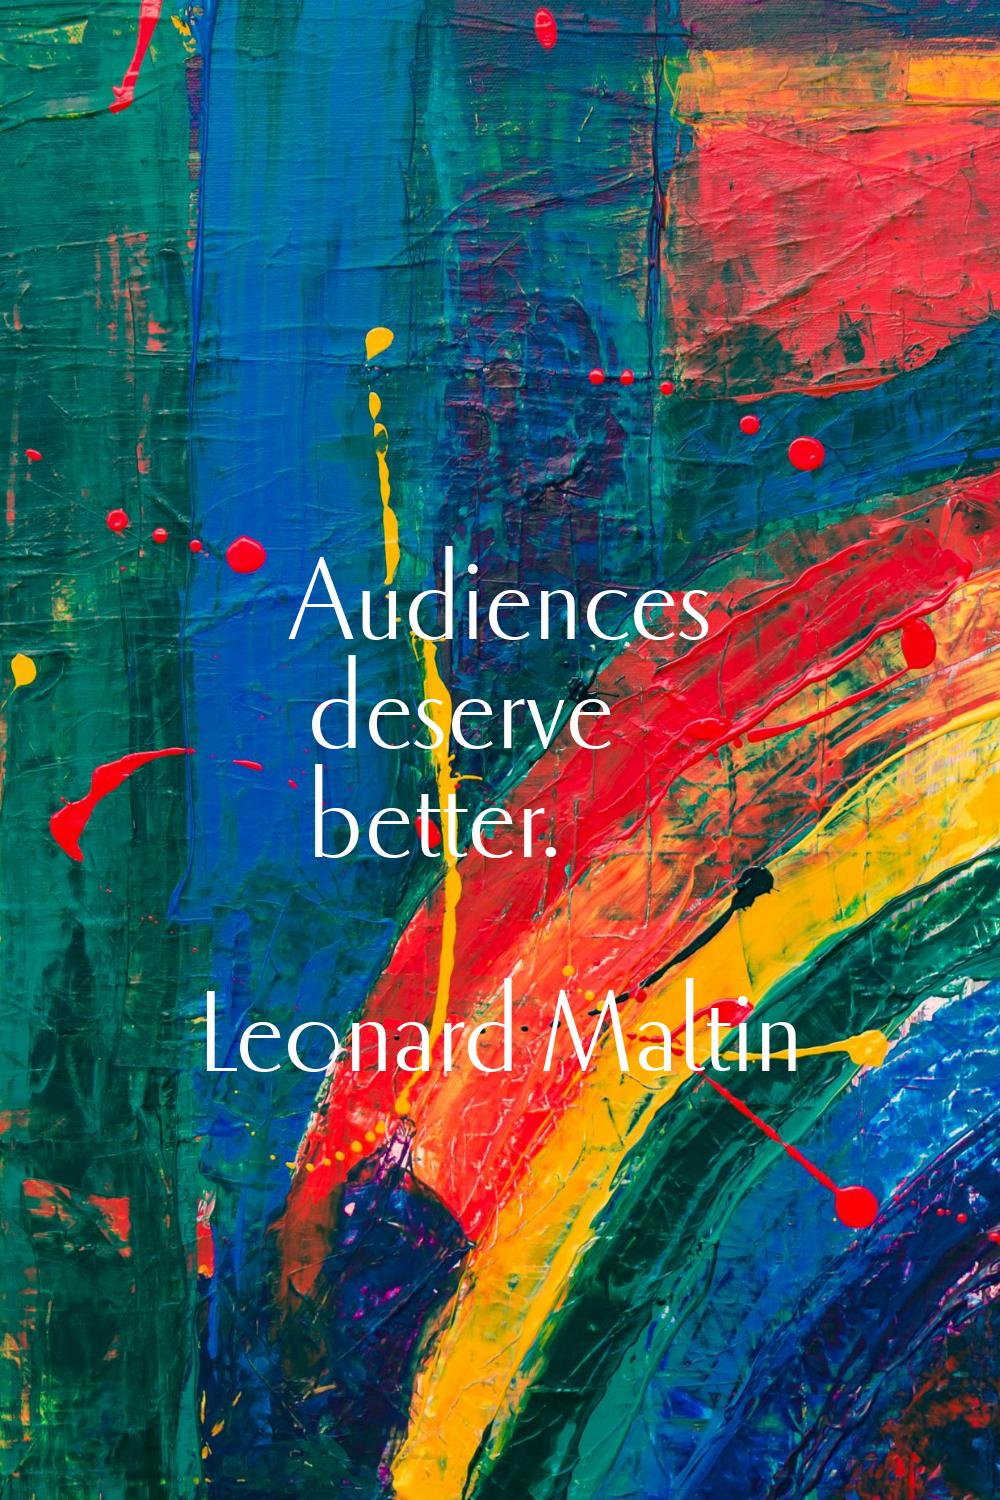 Audiences deserve better.